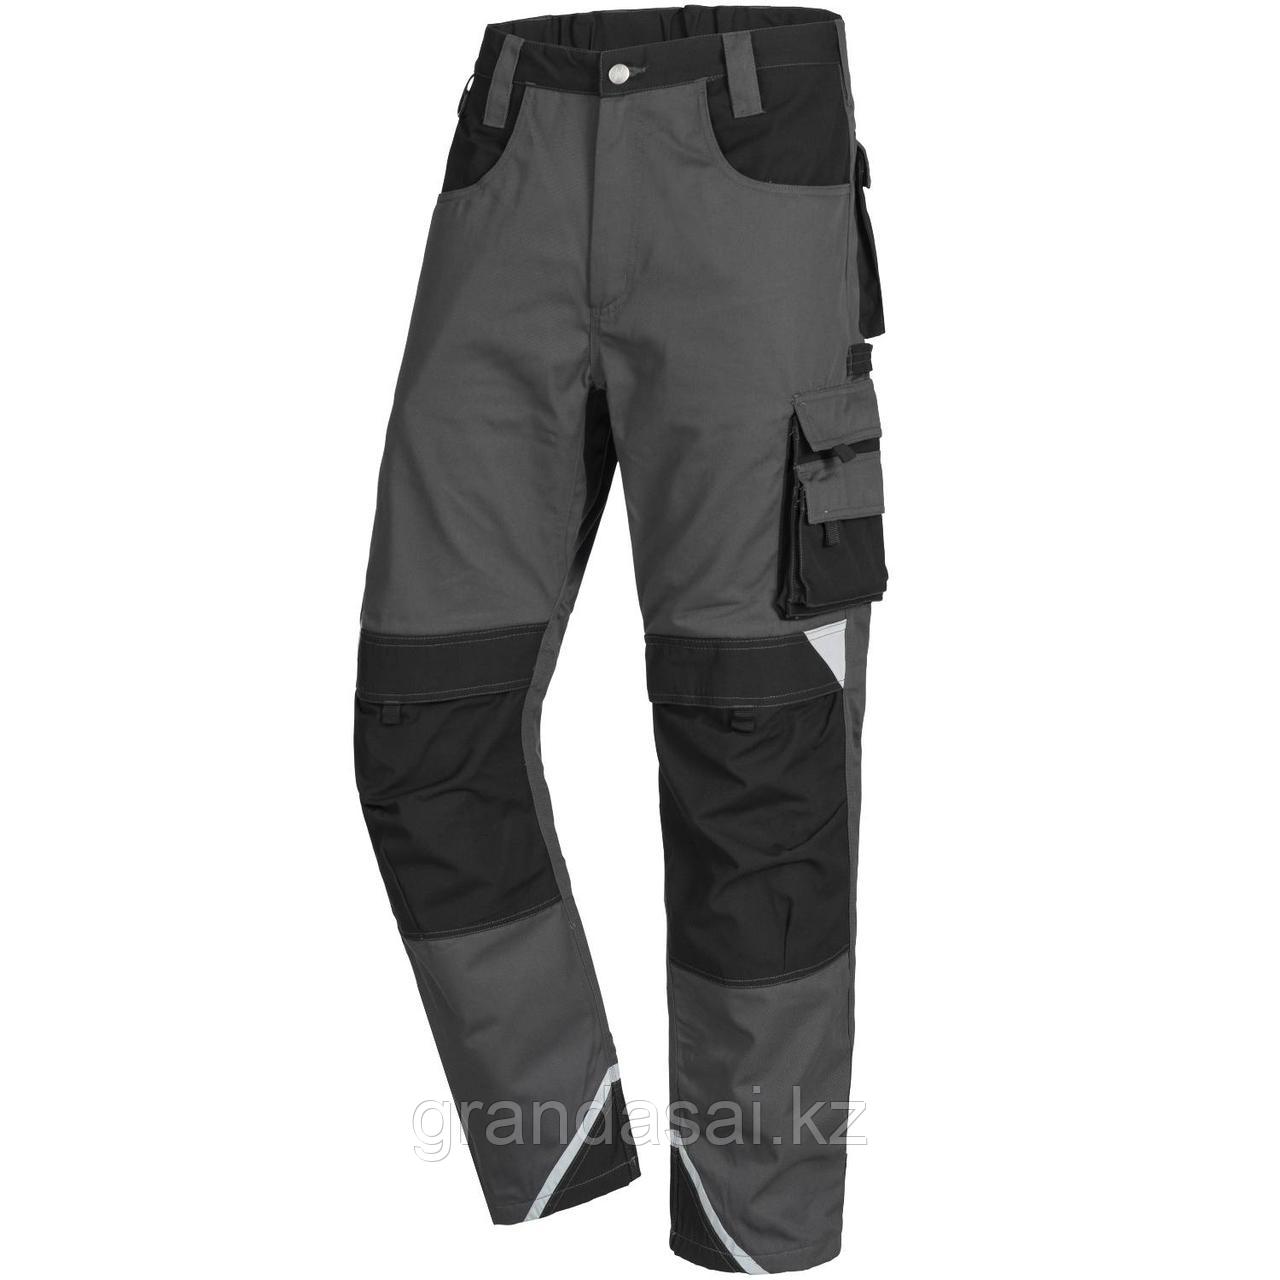 NITRAS 7612, рабочие брюки, цвет серый/черный